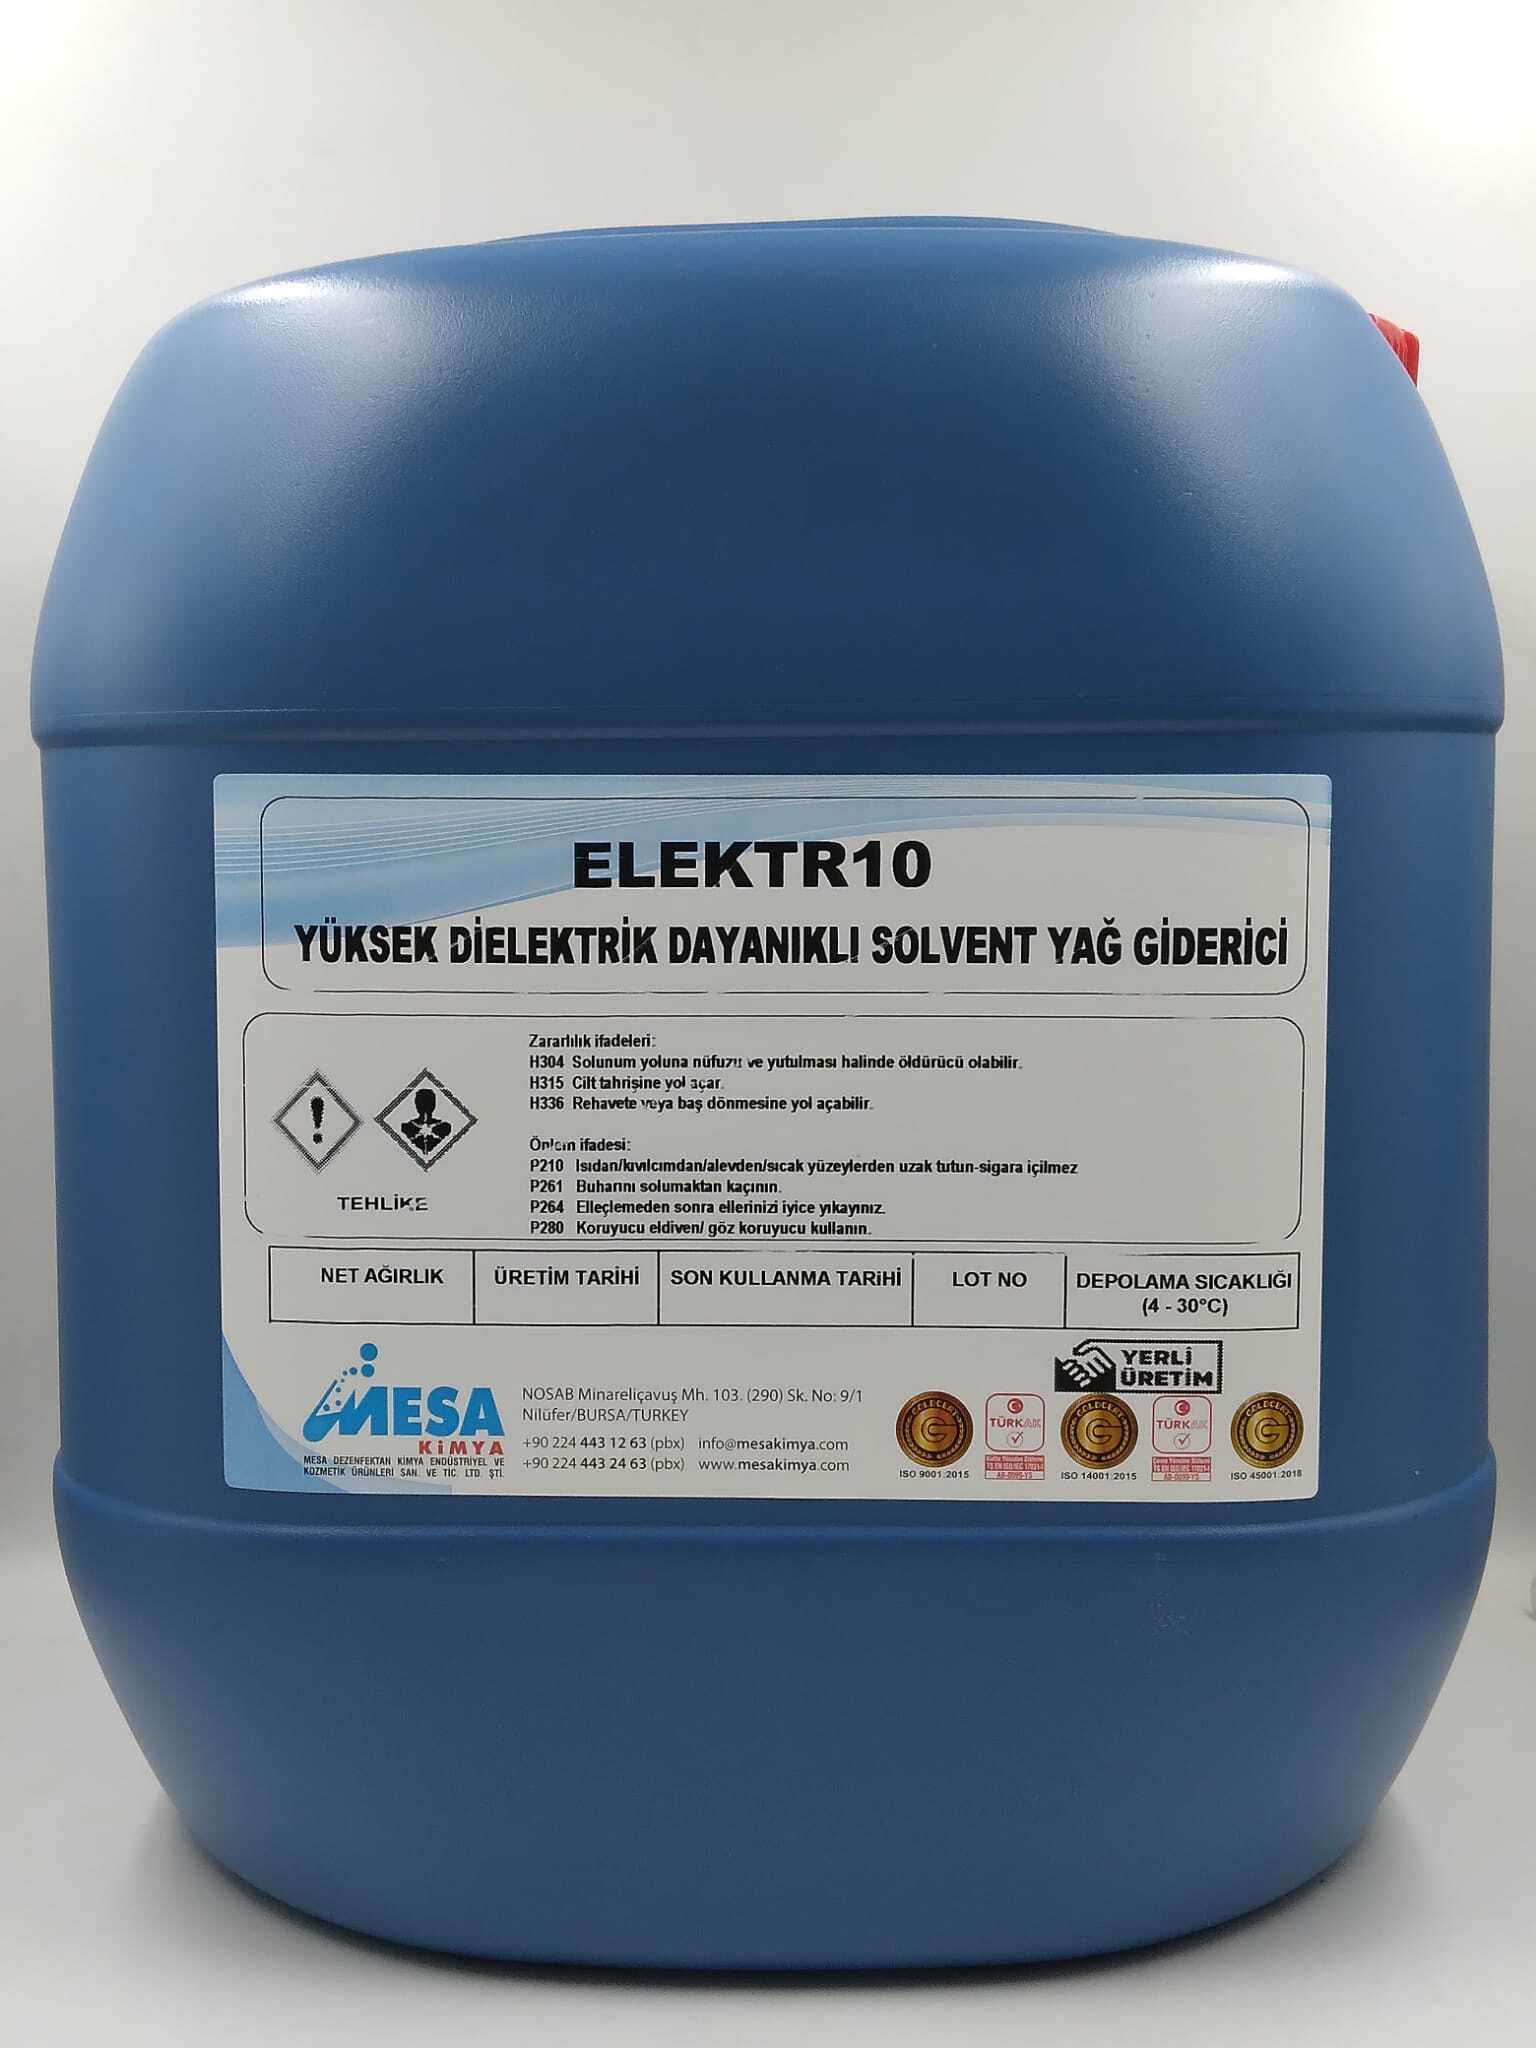 Yüksek dielektrik solvent yağ giderici ELEKTR10 30 kg